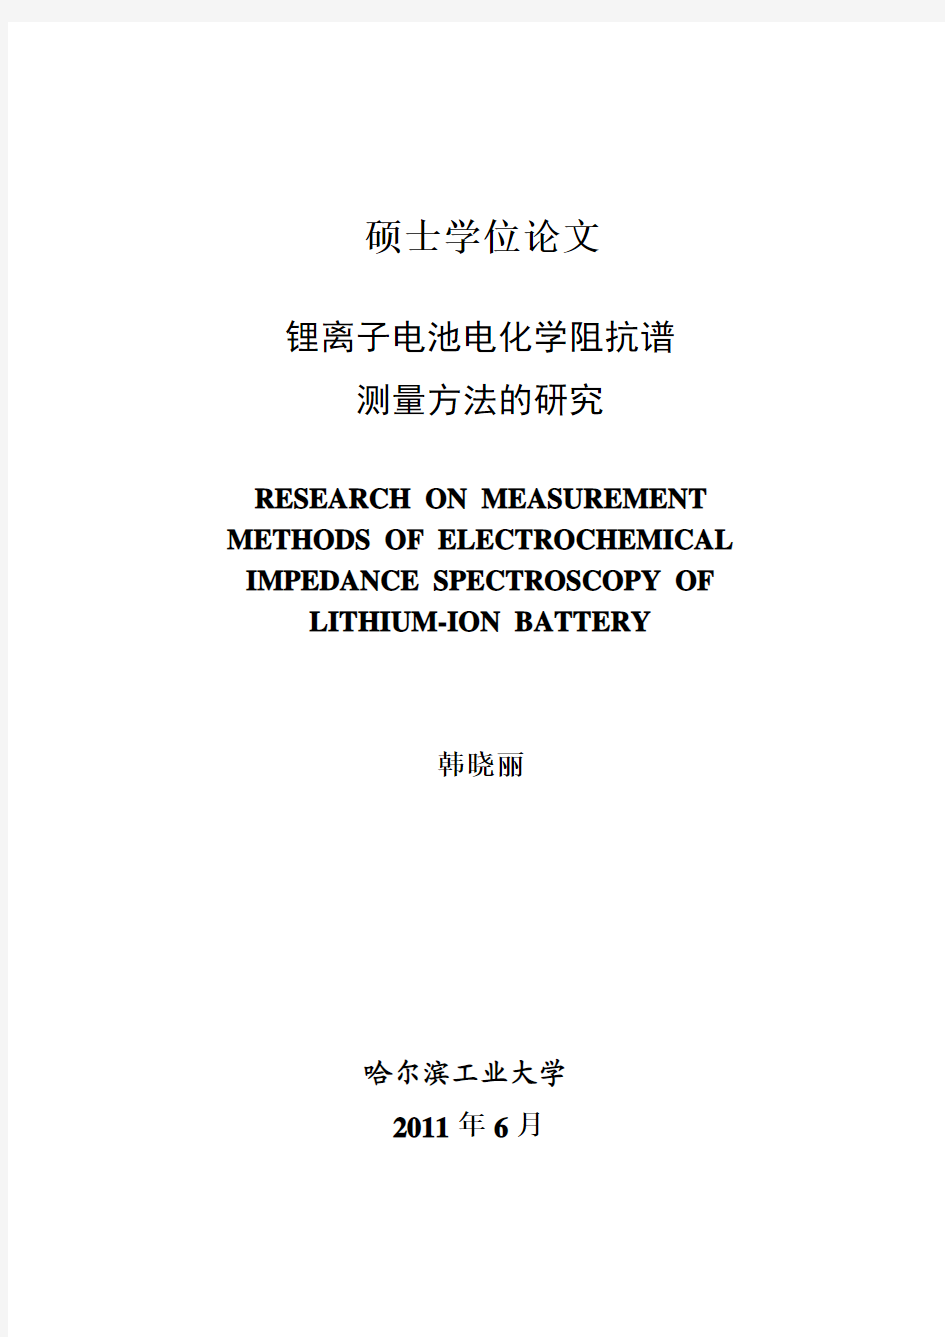 锂离子电池电化学阻抗谱测量方法研究